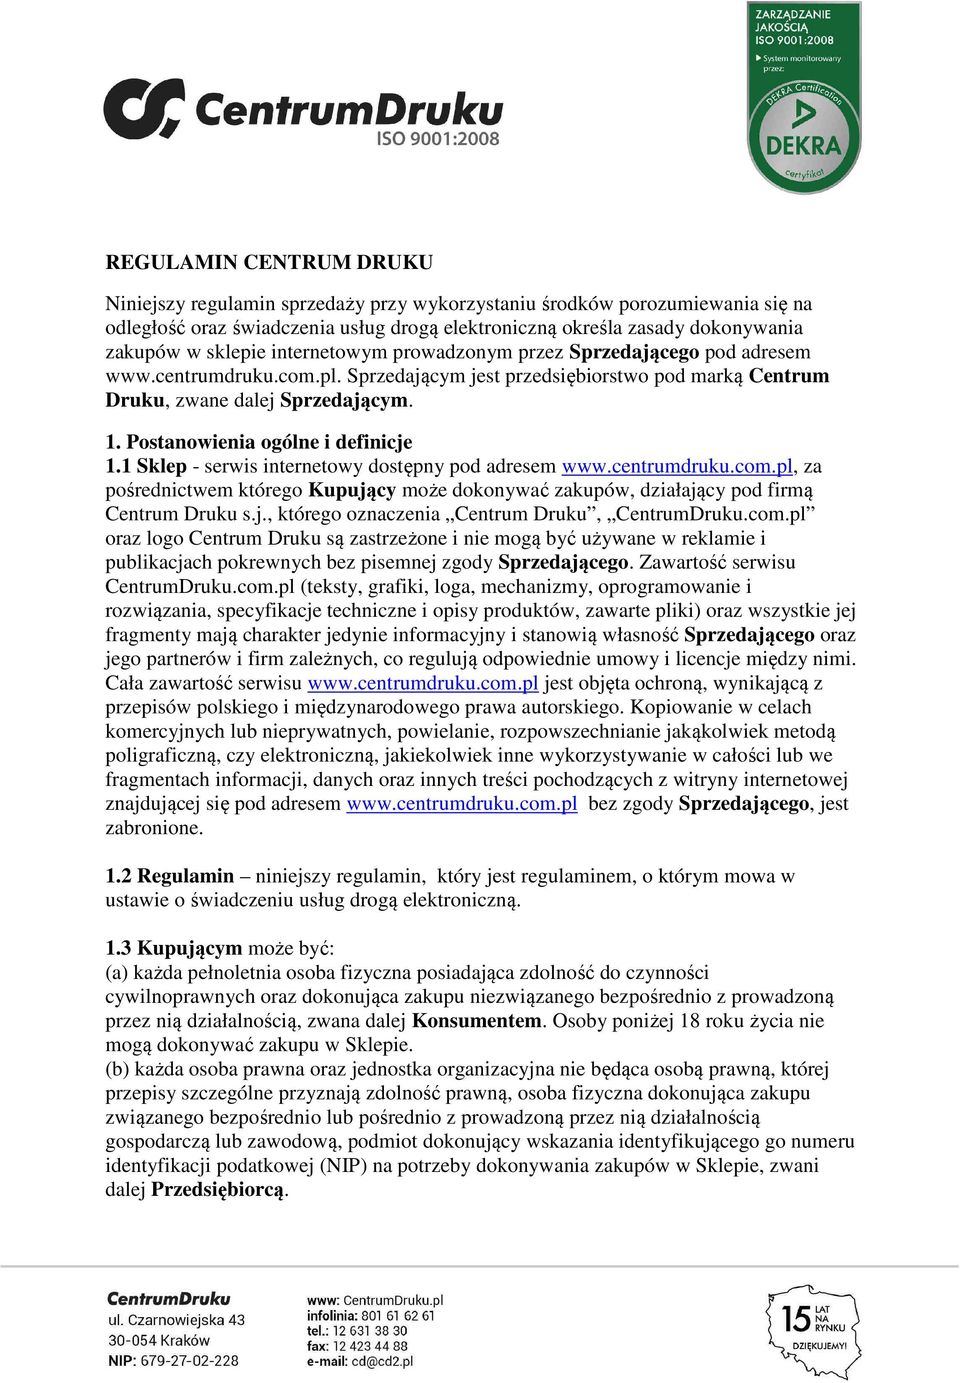 Postanowienia ogólne i definicje 1.1 Sklep - serwis internetowy dostępny pod adresem www.centrumdruku.com.